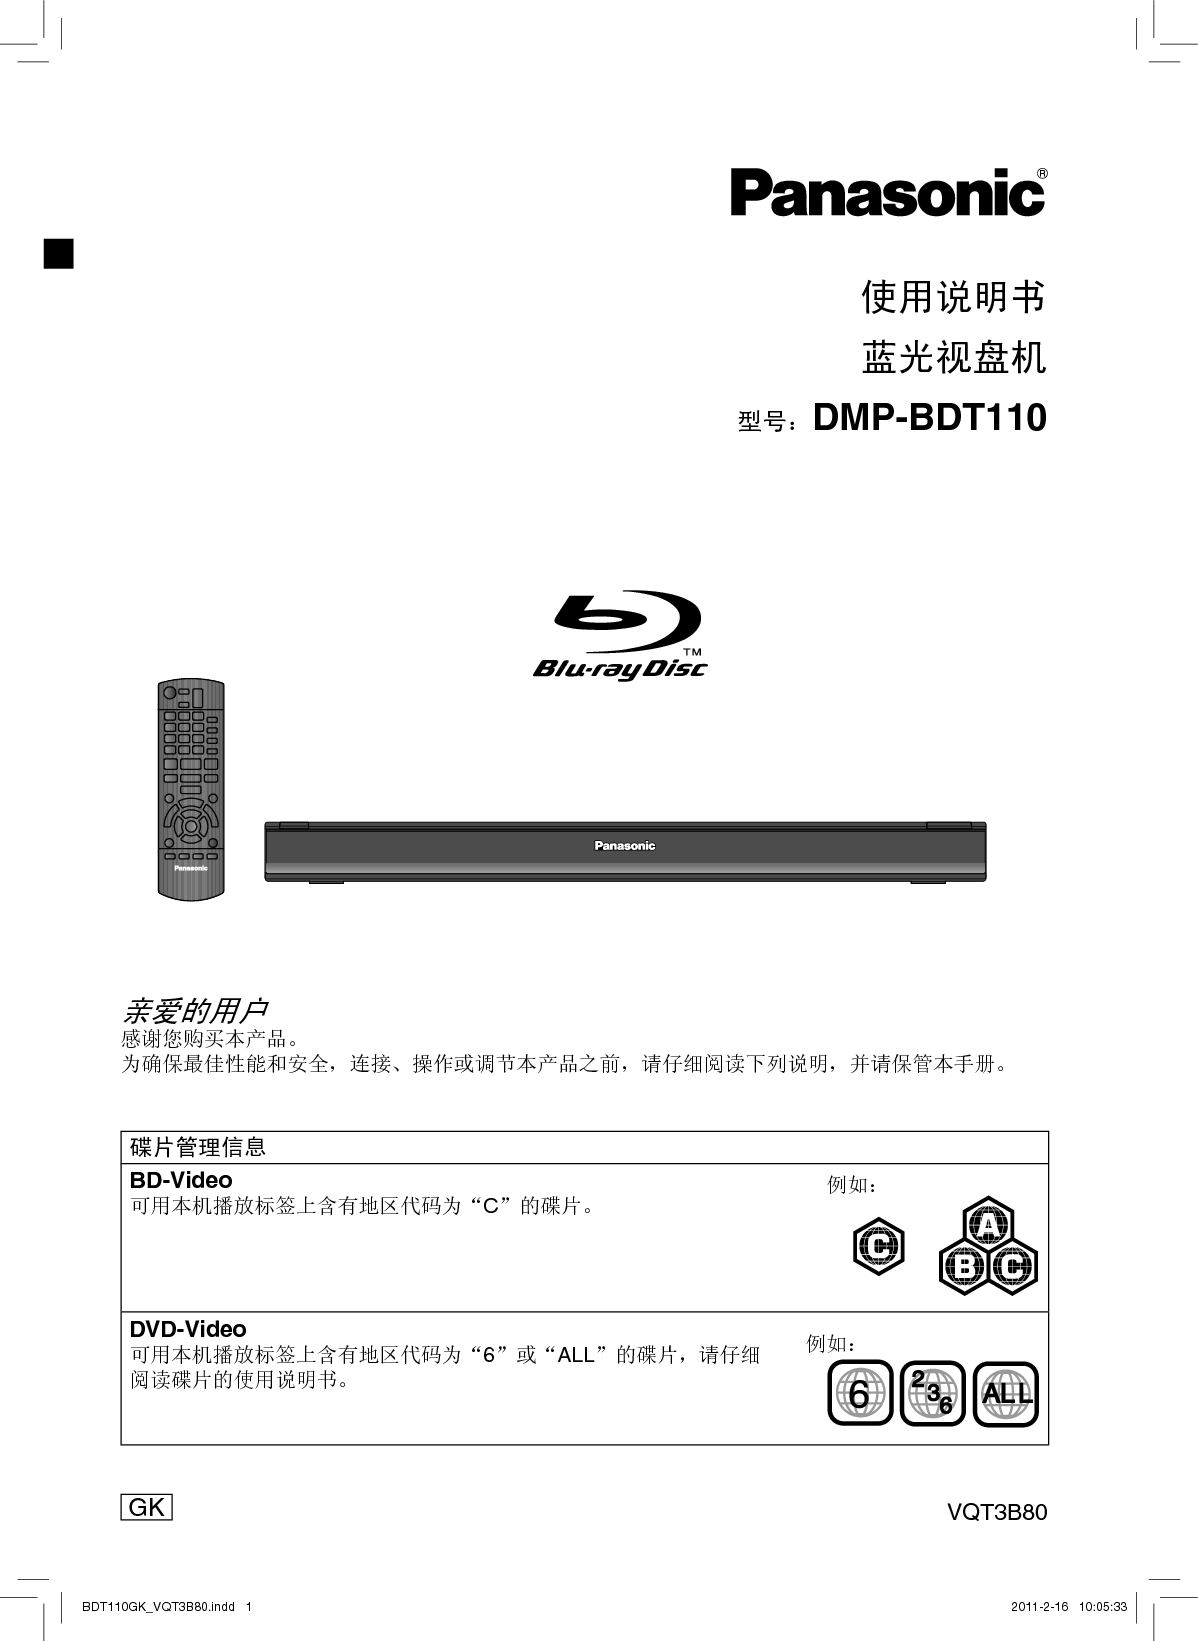 松下 Panasonic DMP-BDT110 说明书 封面